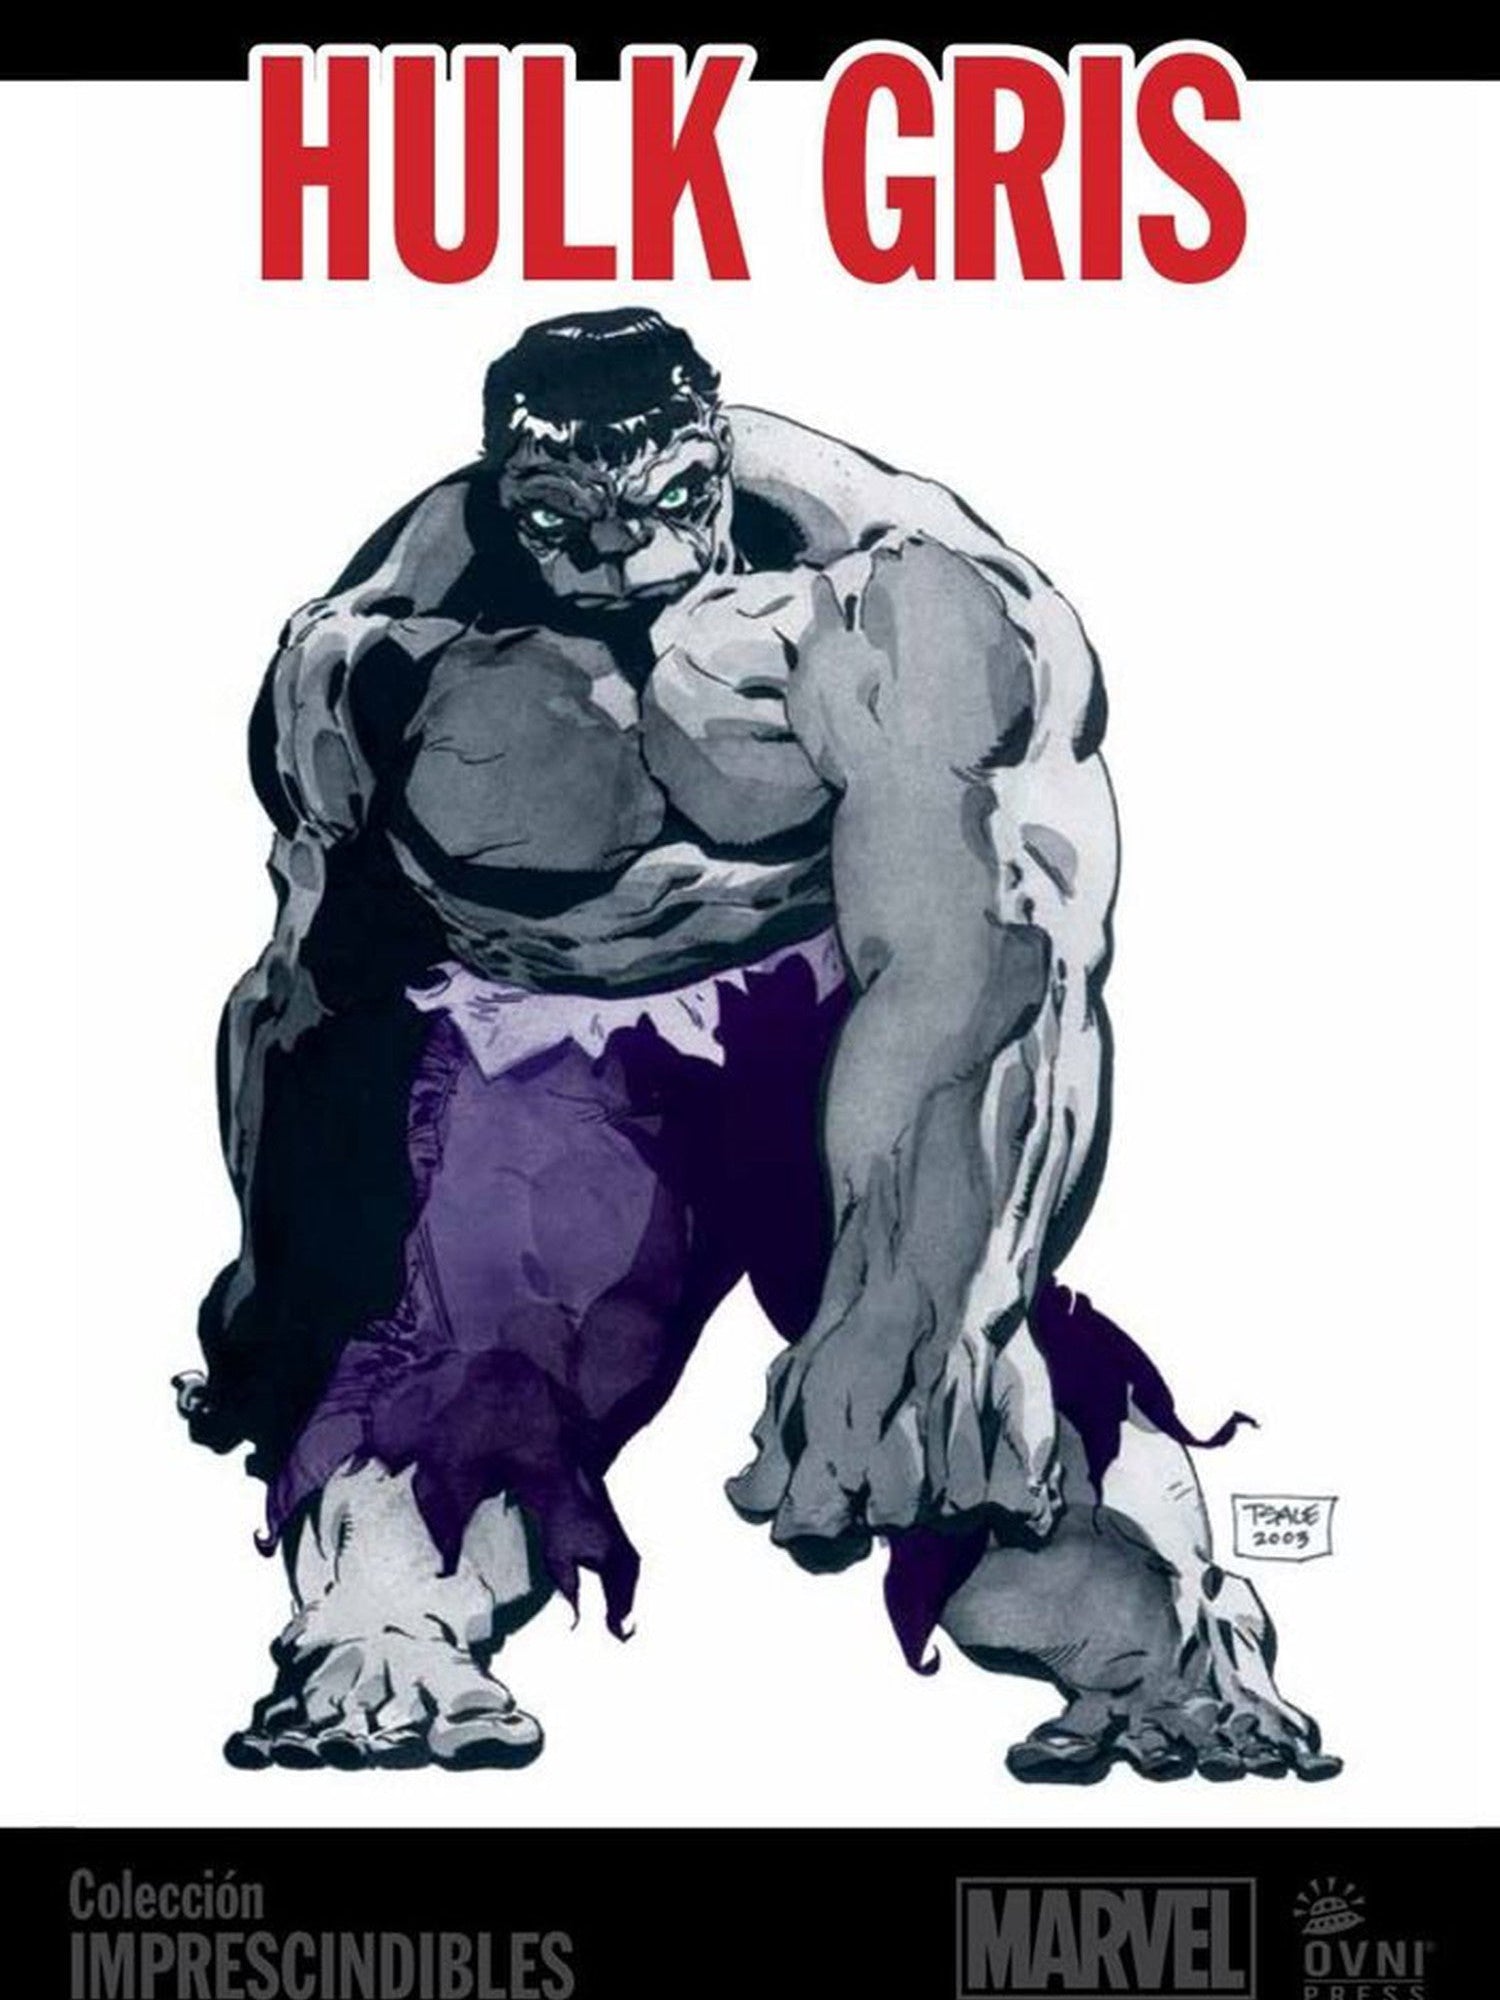 Imprescindibles Marvel : Hulk ~ Gris OVNI Press ENcuadrocomics